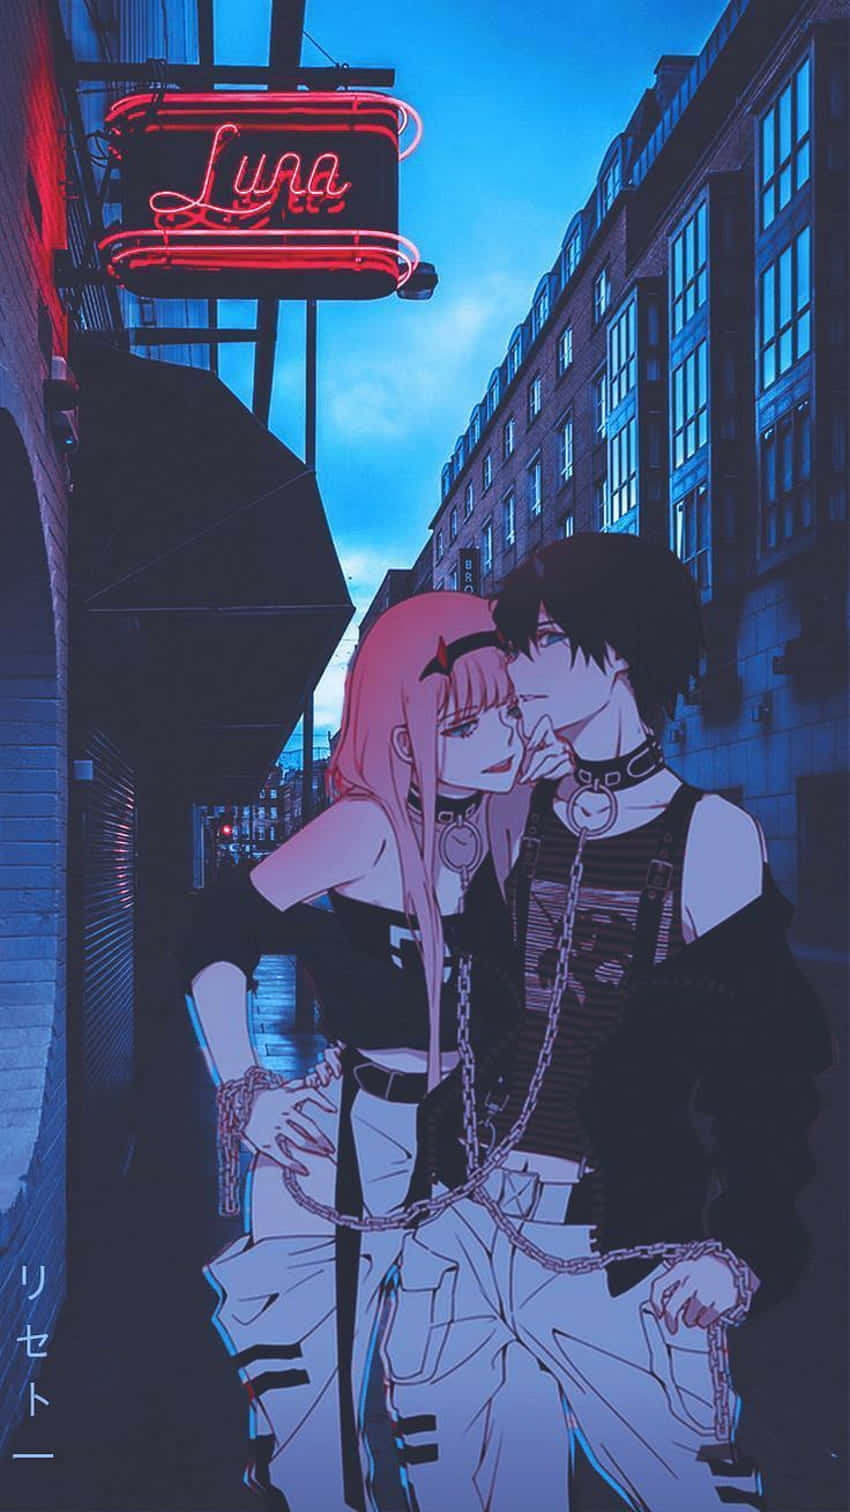 To Animekarakterer i et intimt æstetisk øjeblik Wallpaper